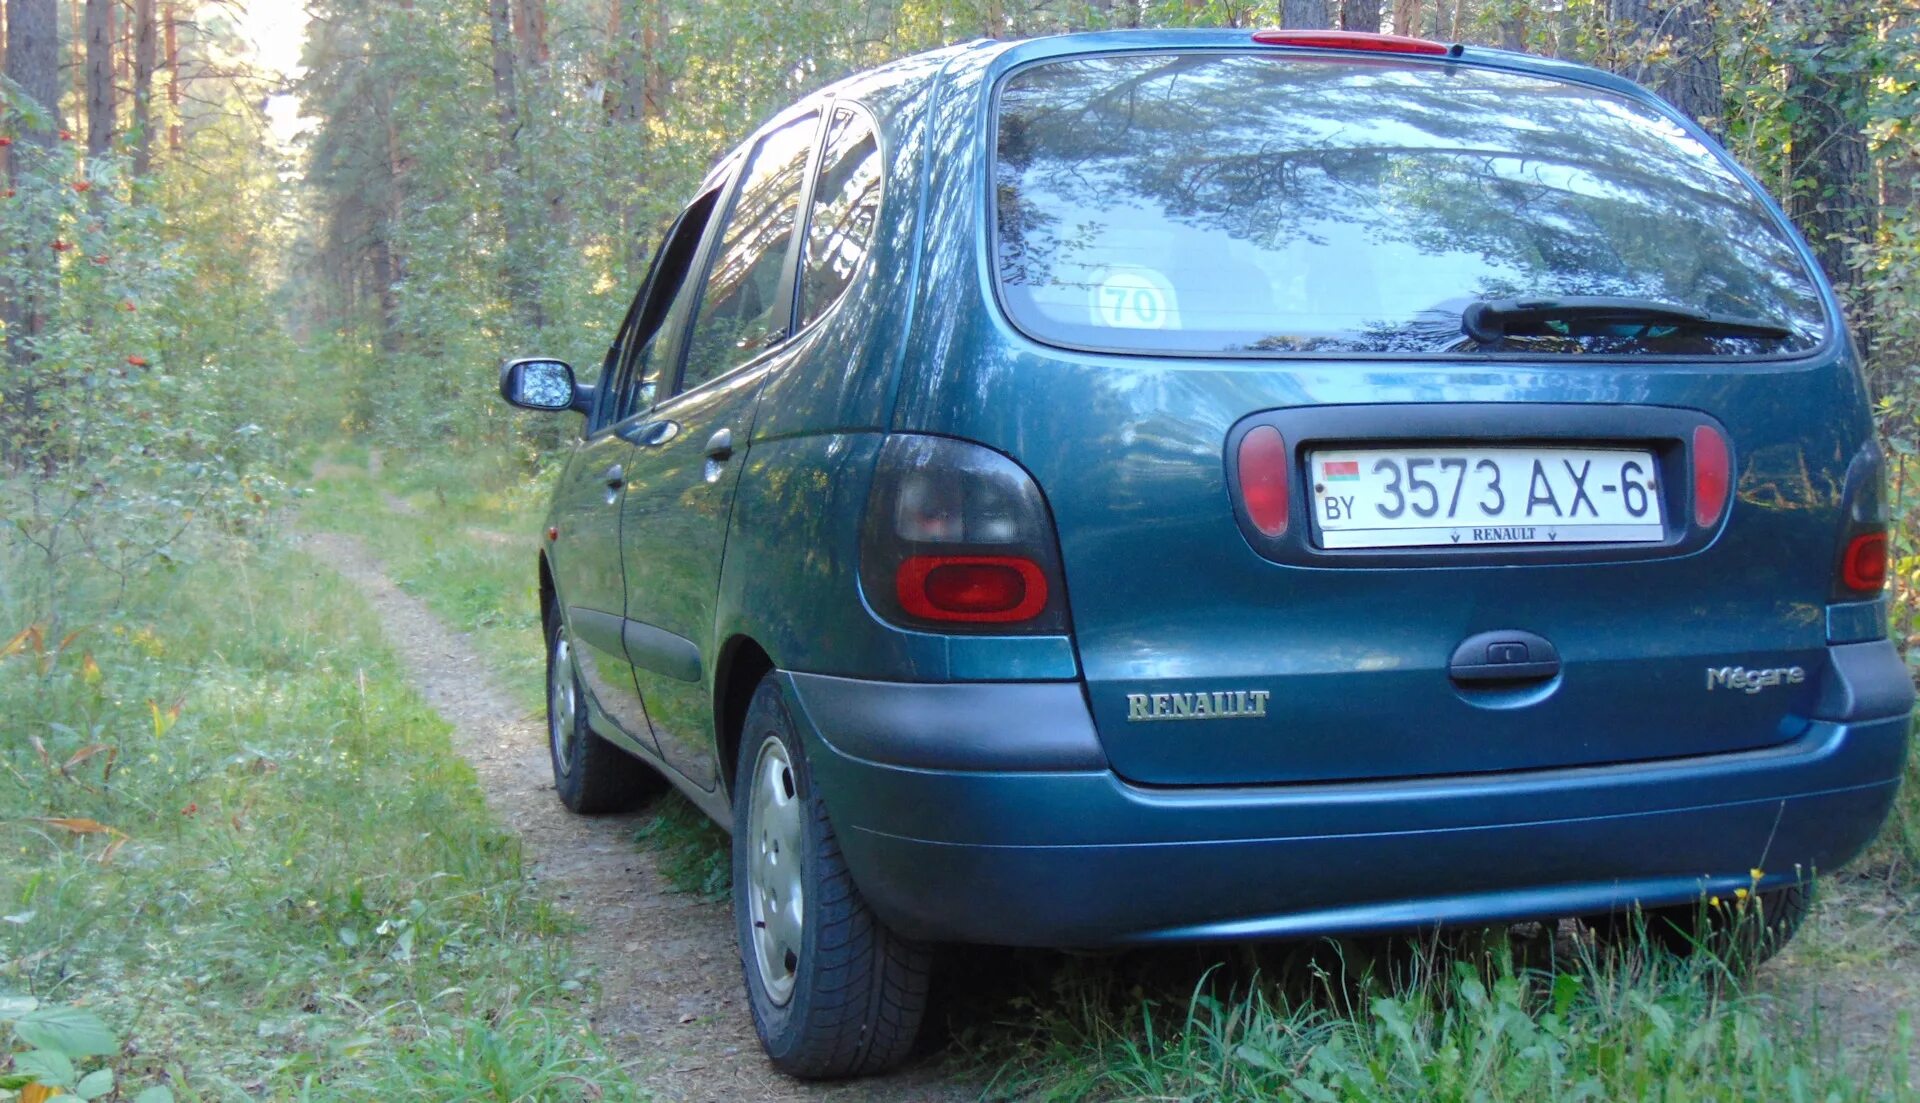 Renault Megane Scenic 2002. Рено Сценик 1. Спойлер на Рено Сценик Меган 1. Рено Сценик 1 зеленый.